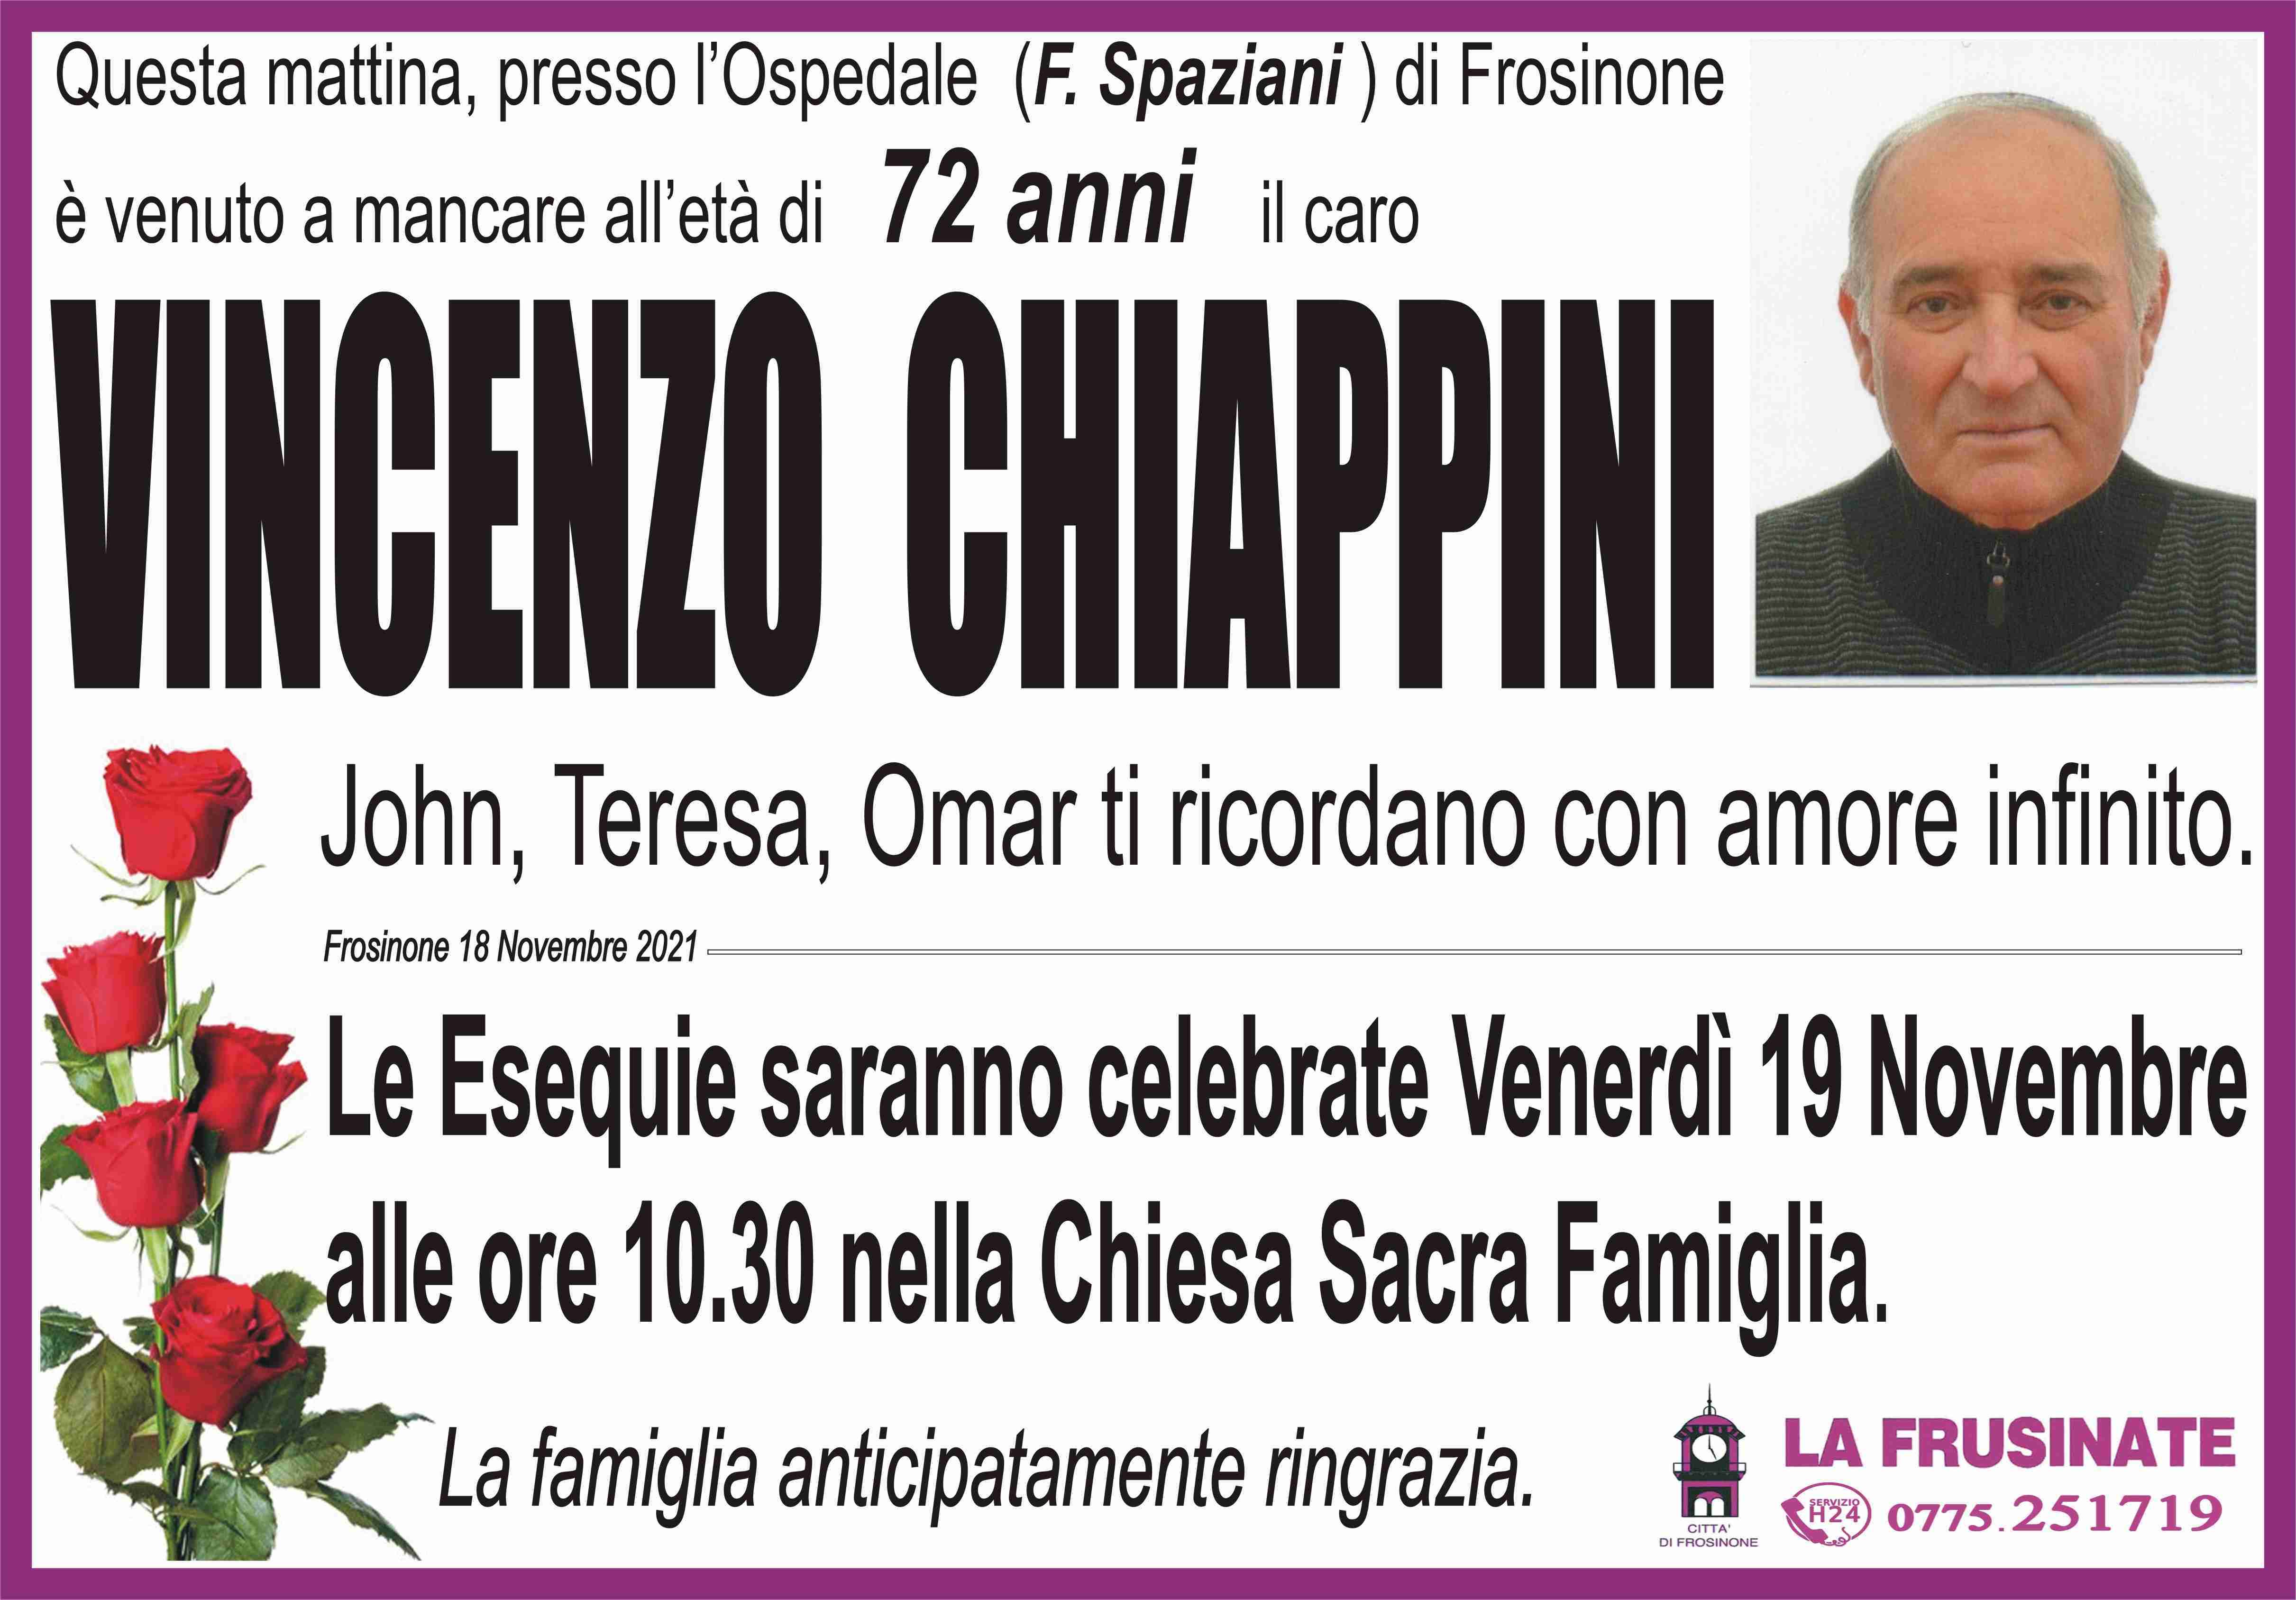 Vincenzo Chiappini